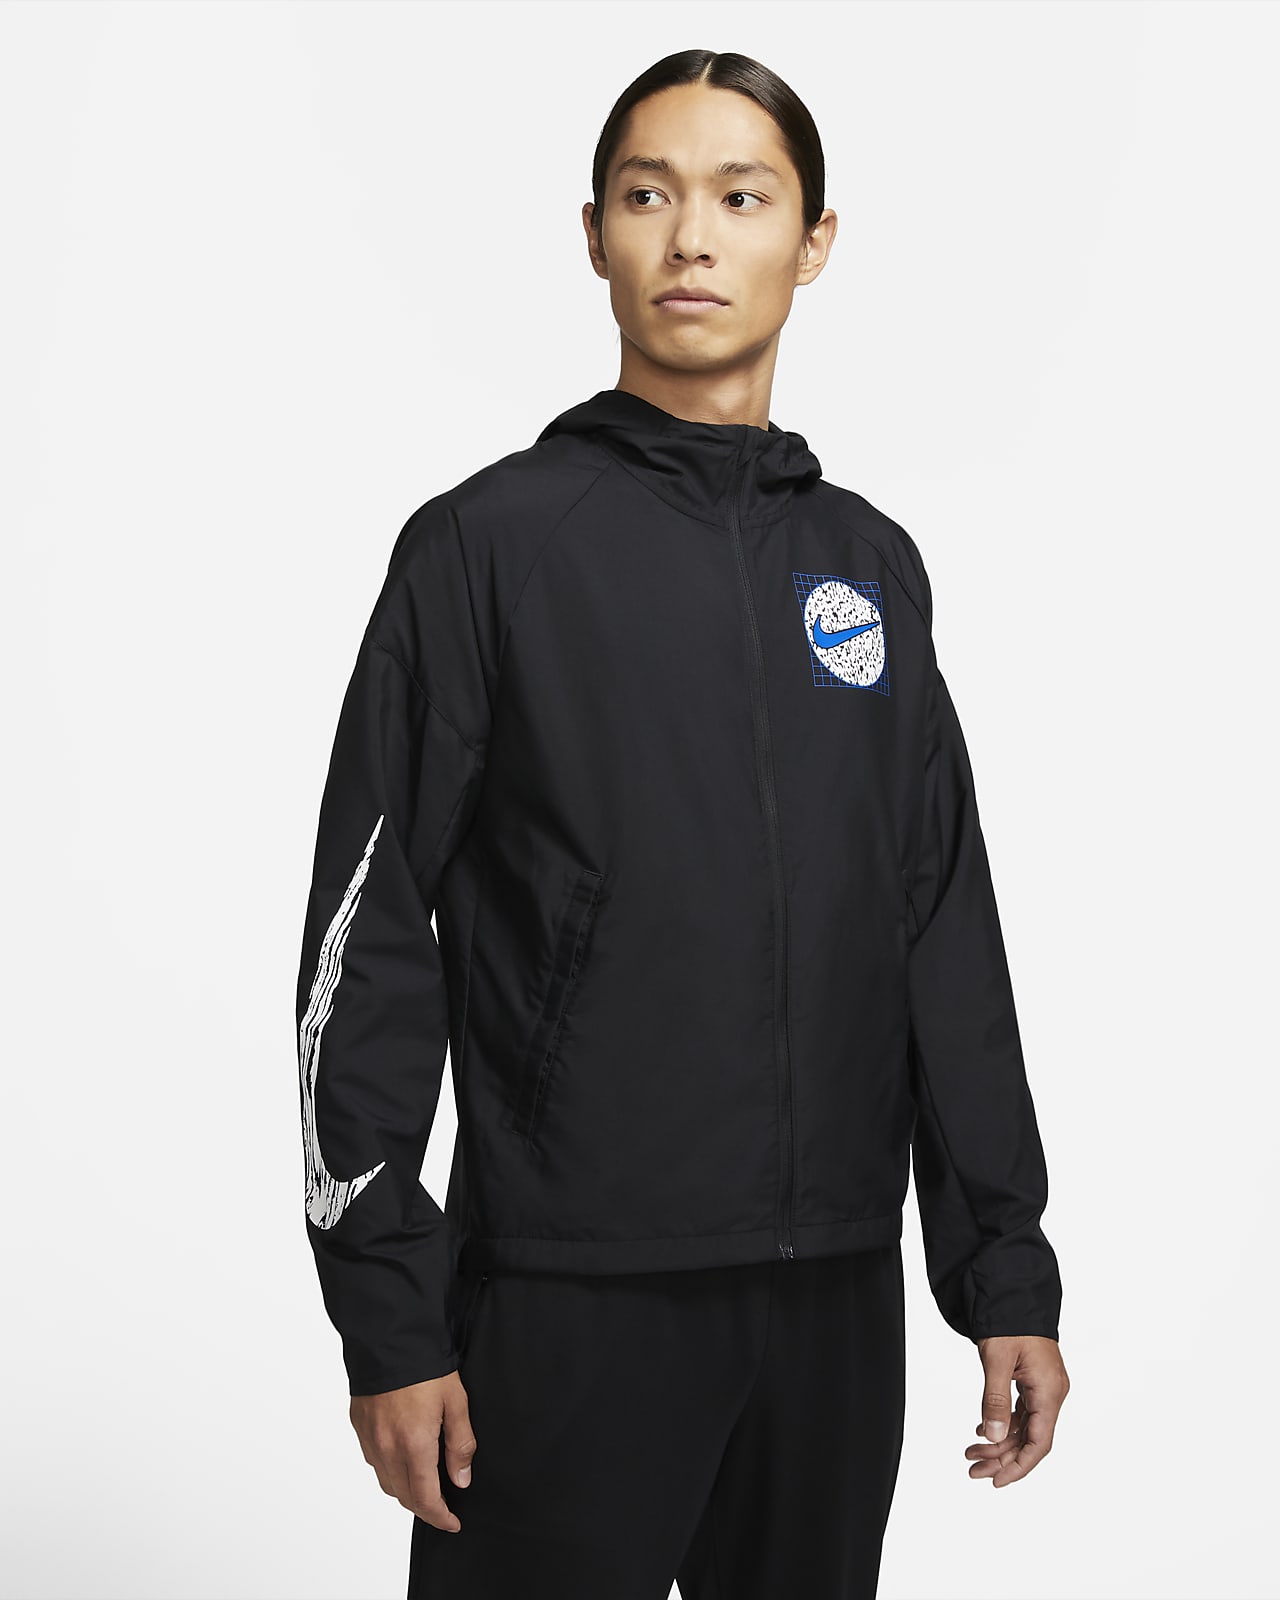 Nike公式 ナイキ エッセンシャル ワイルド ラン メンズ ランニングジャケット オンラインストア 通販サイト